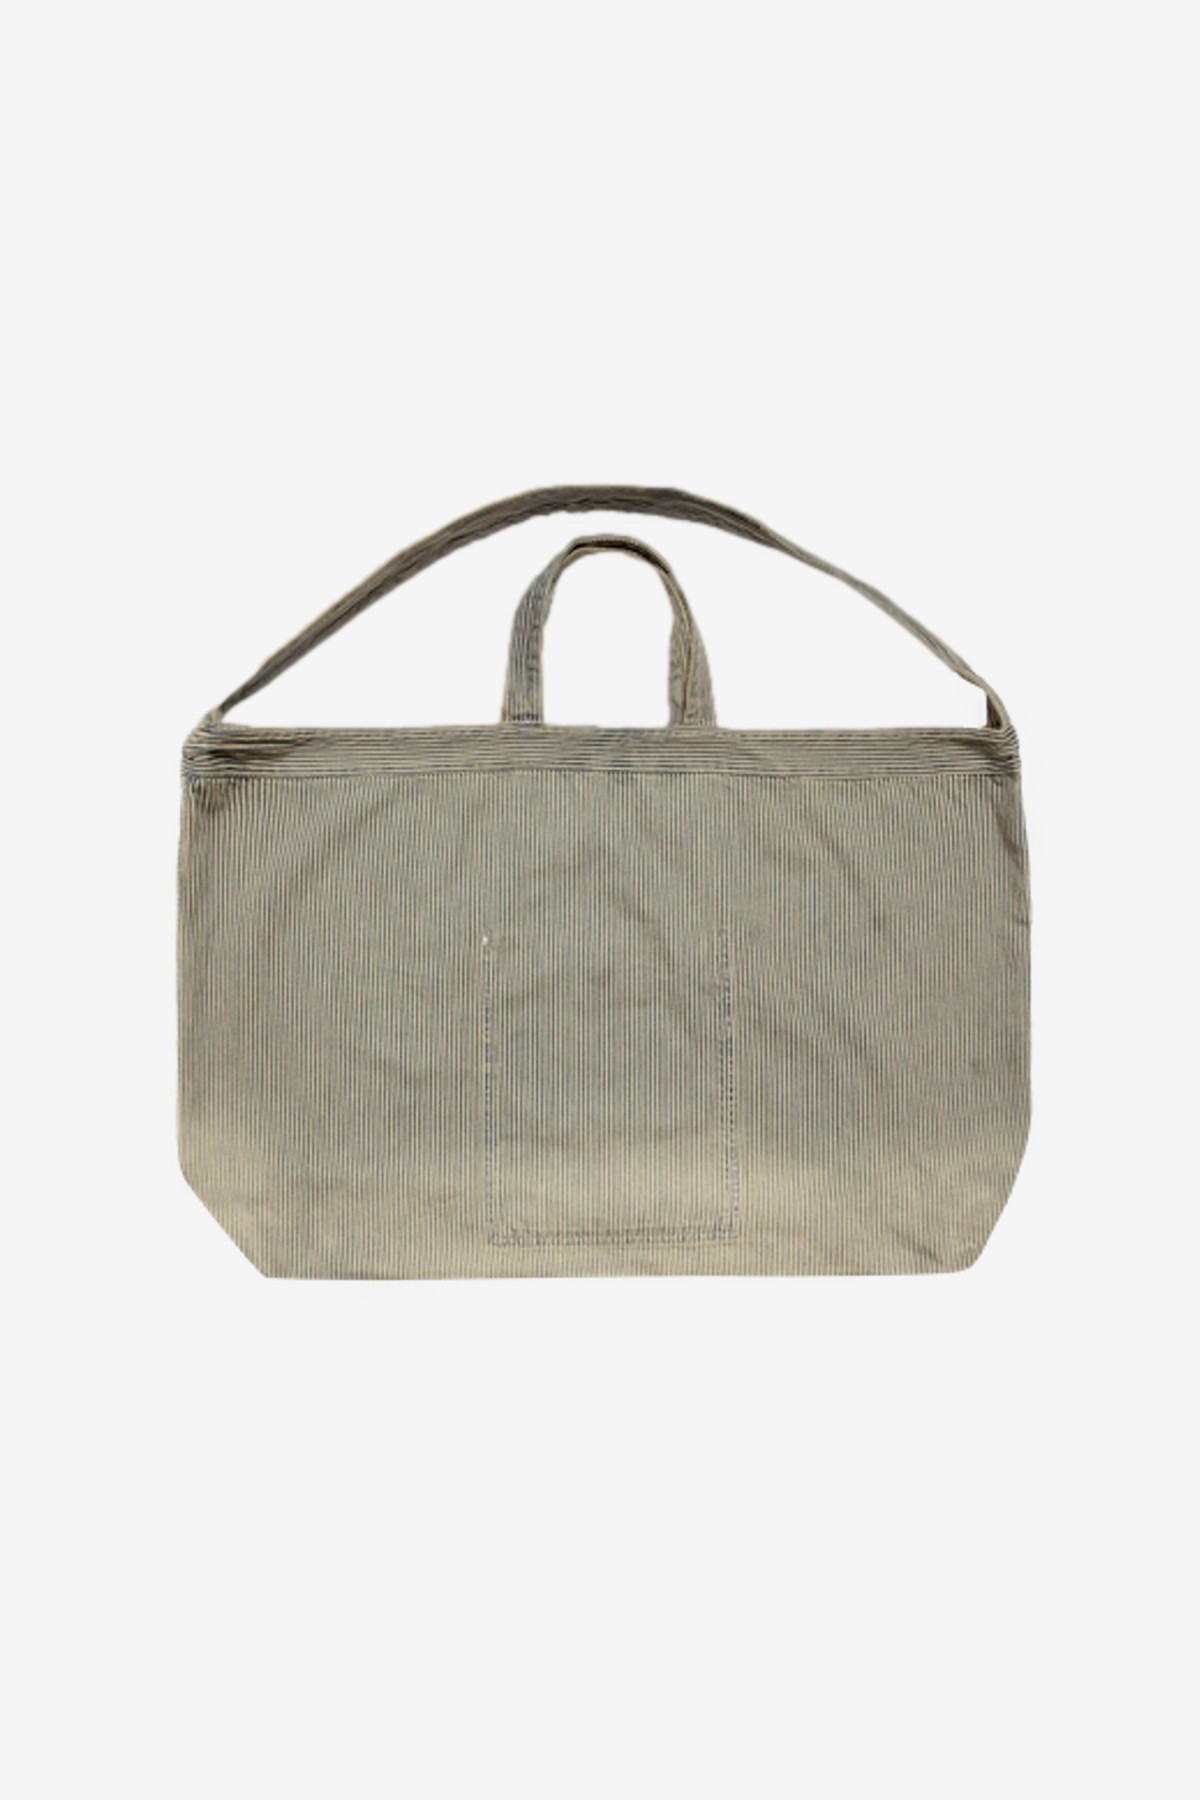 YMC You Must Create Tote Bag in Navy/Brown